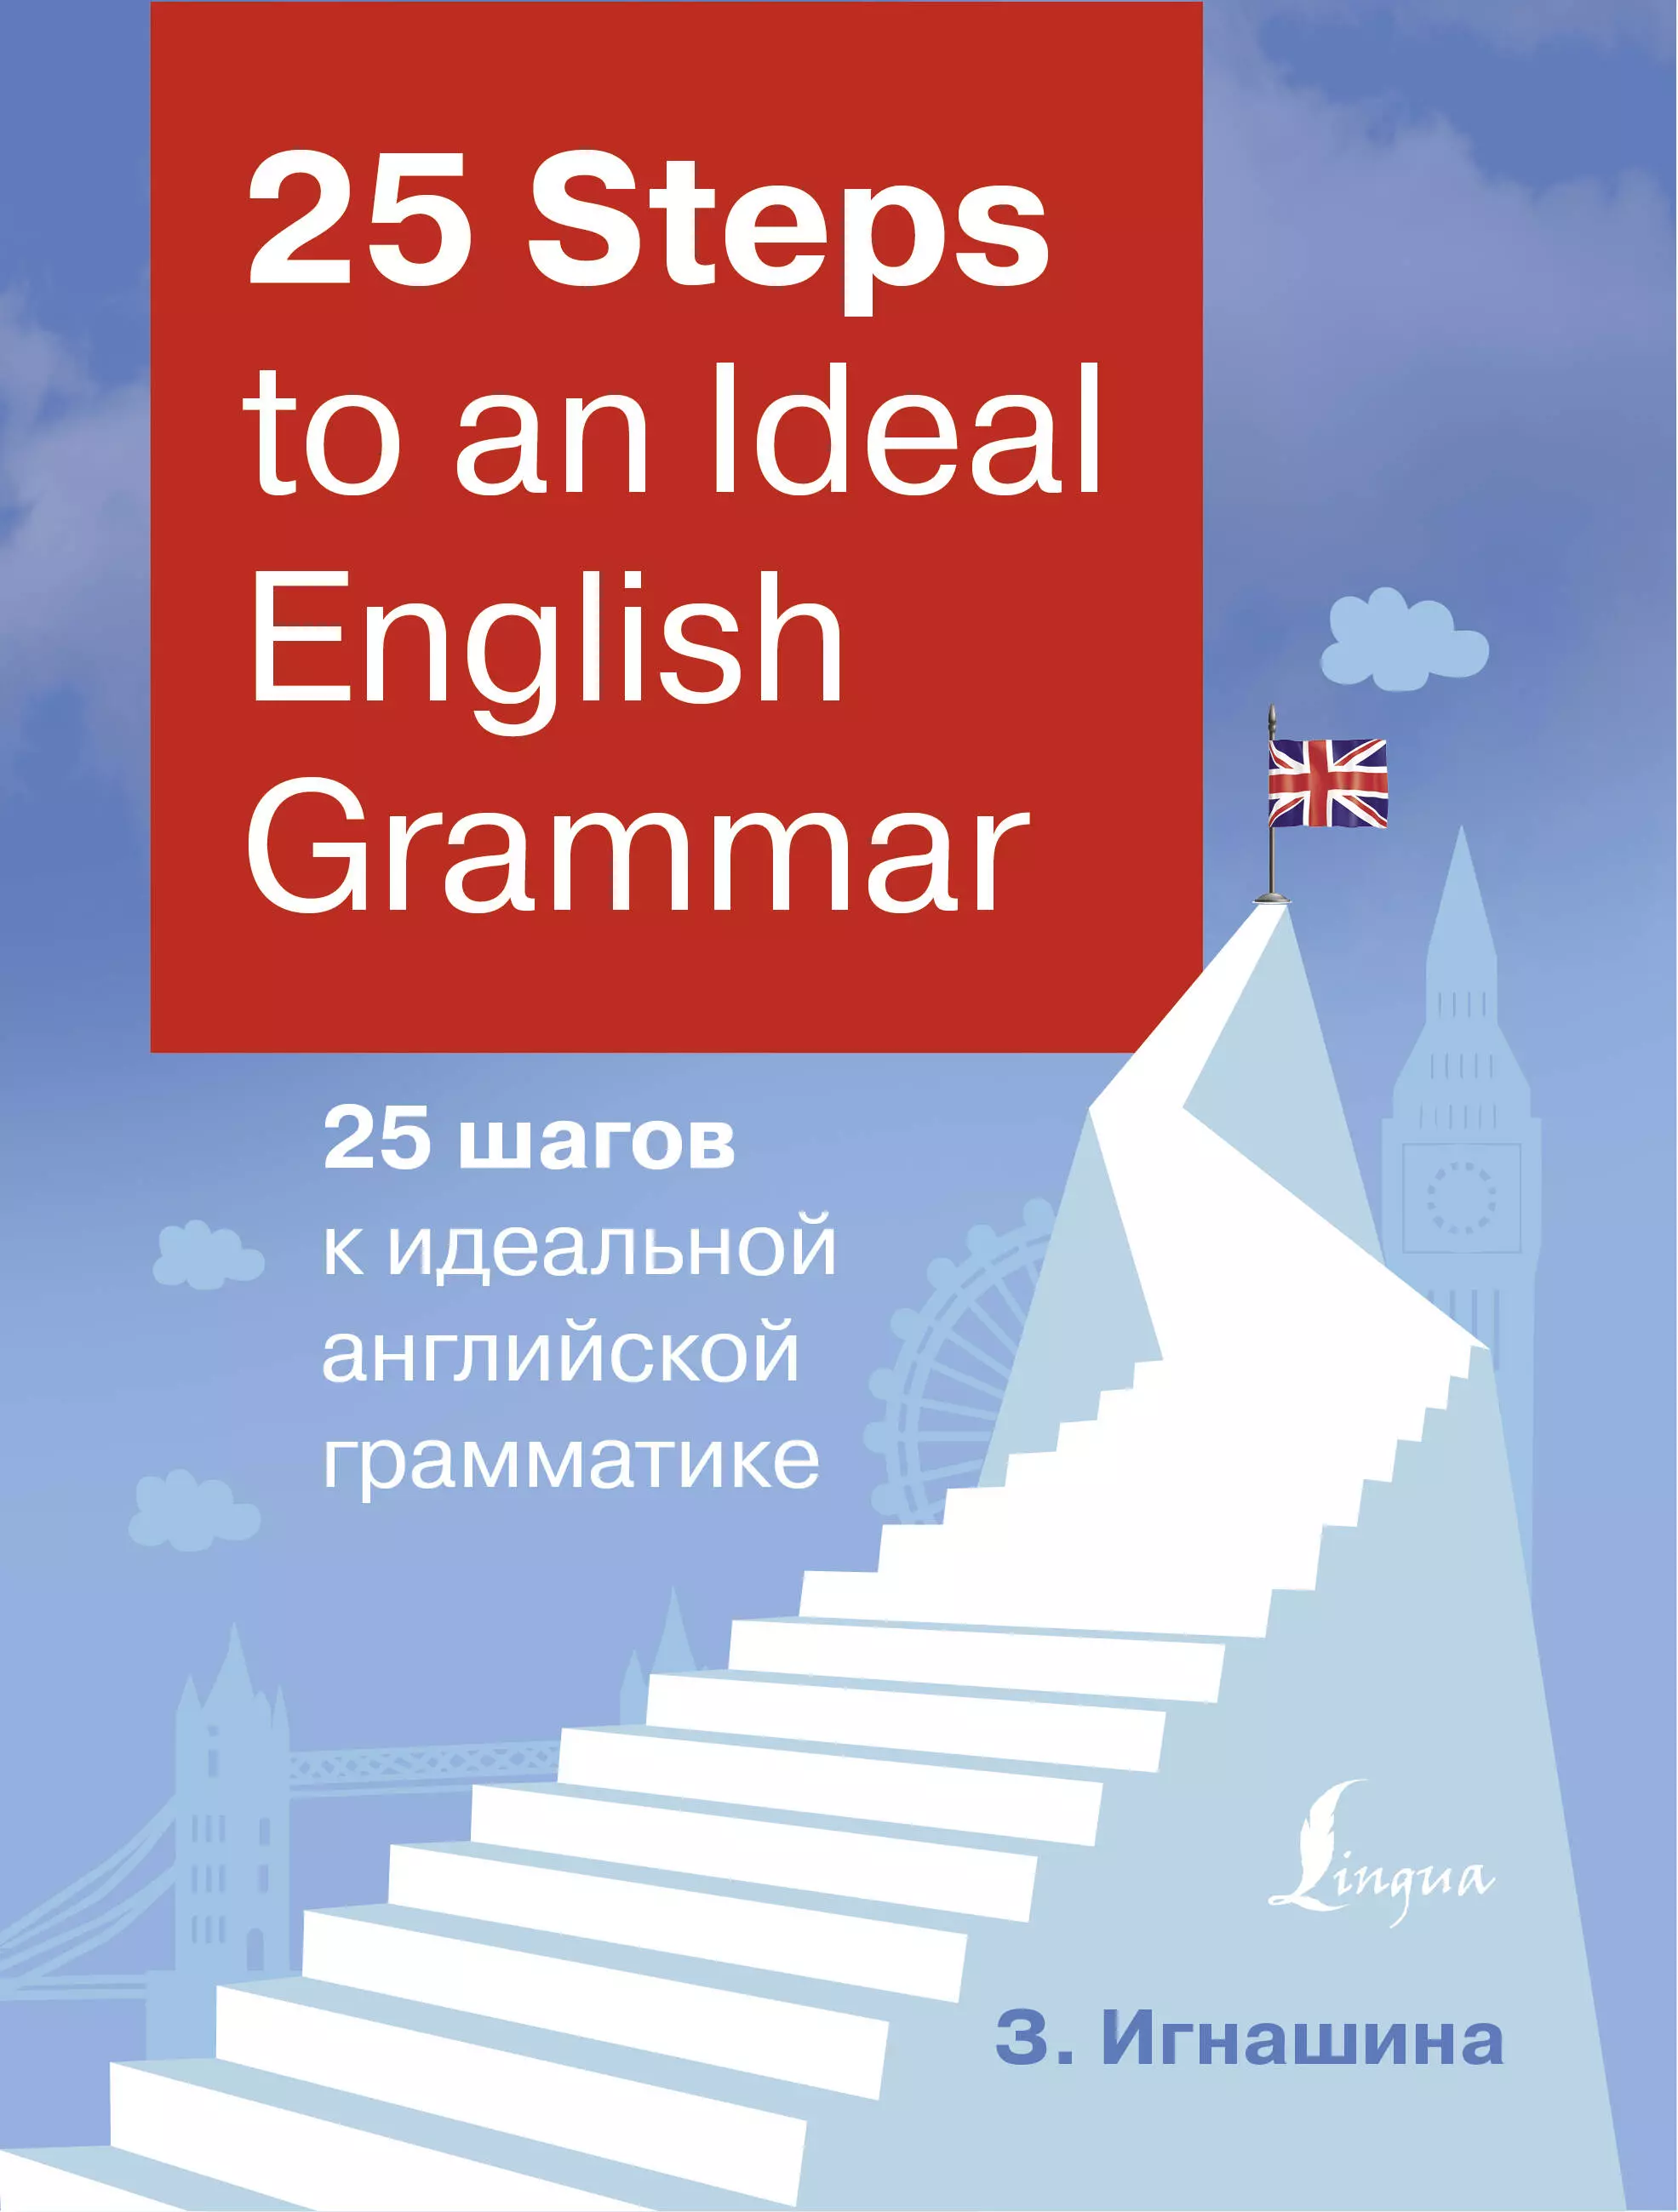 Игнашина Зоя Николаевна - 25 Steps to an Ideal English Grammar/25 шагов к идеальной английской грамматике